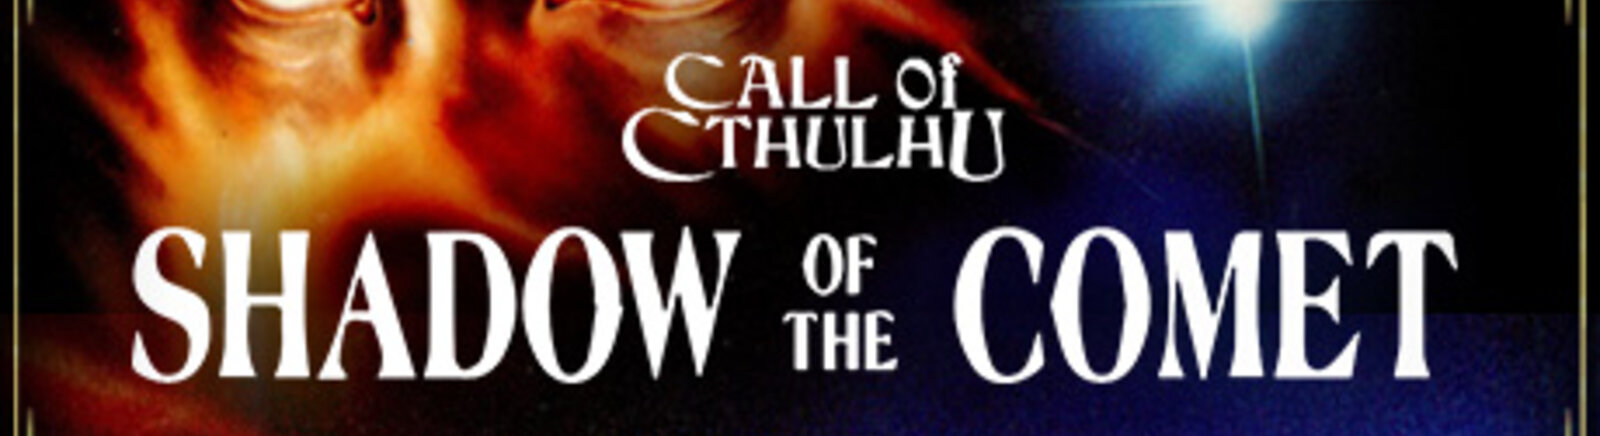 Дата выхода Call of Cthulhu: Shadow of the Comet (Shadow of the Comet)  на PC-98 и DOS в России и во всем мире